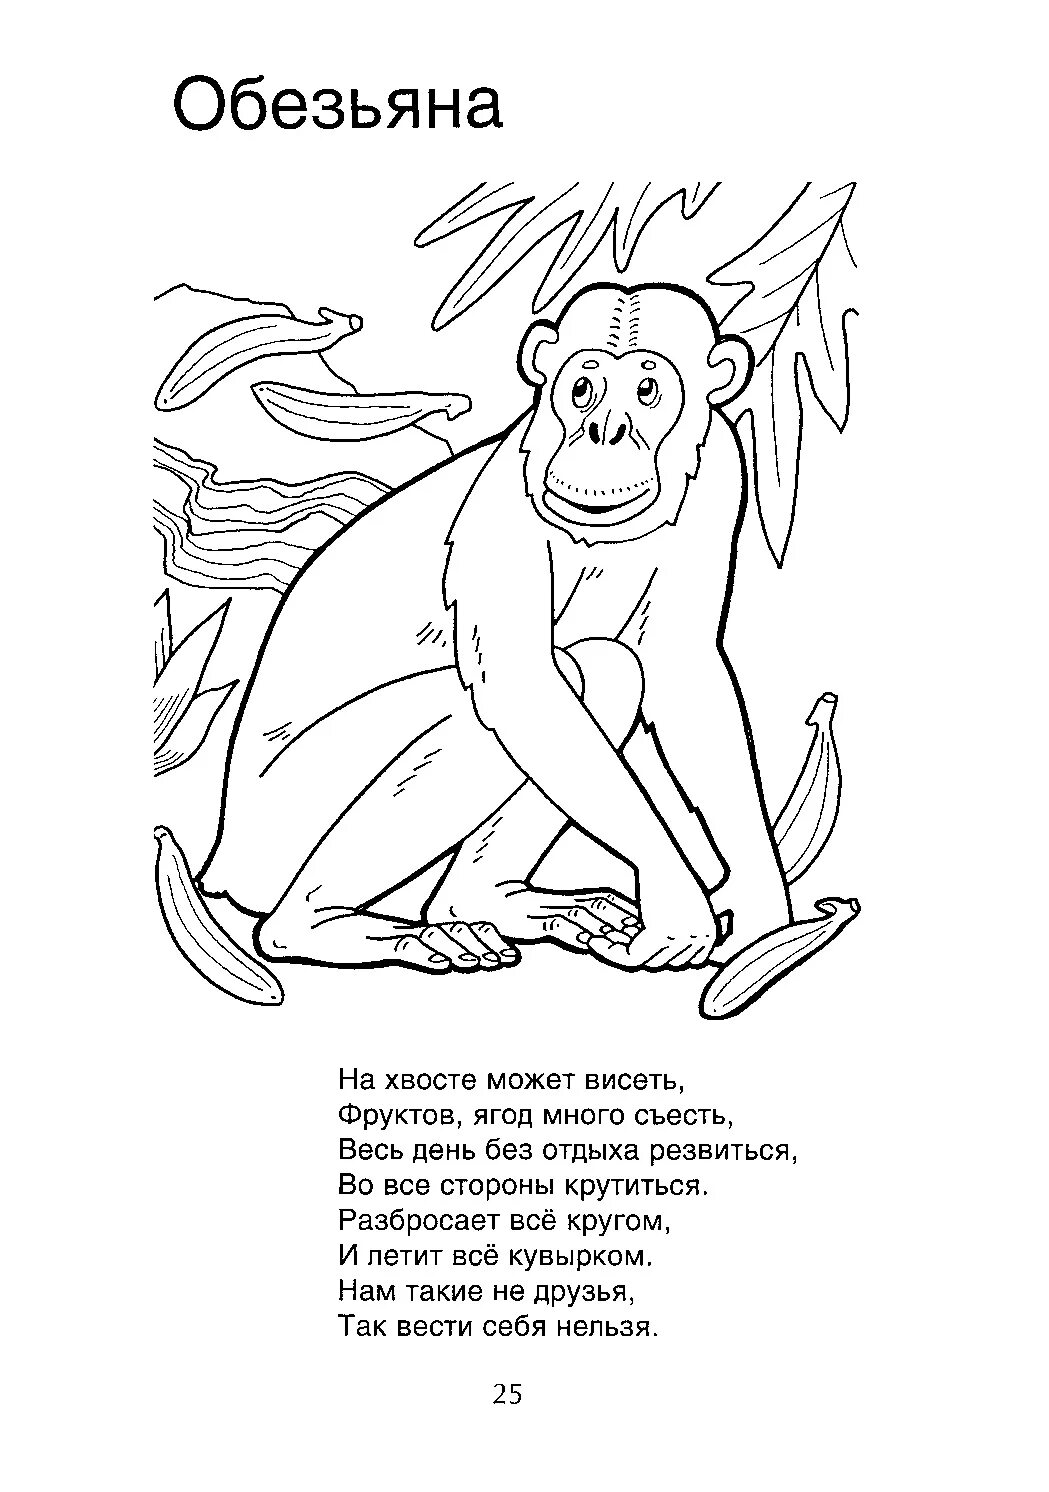 Стих про обезьяну. Стихотворение про мартышку. Раскраски загадки. Стихотворение про обезьяну. Стих про обезьянку.